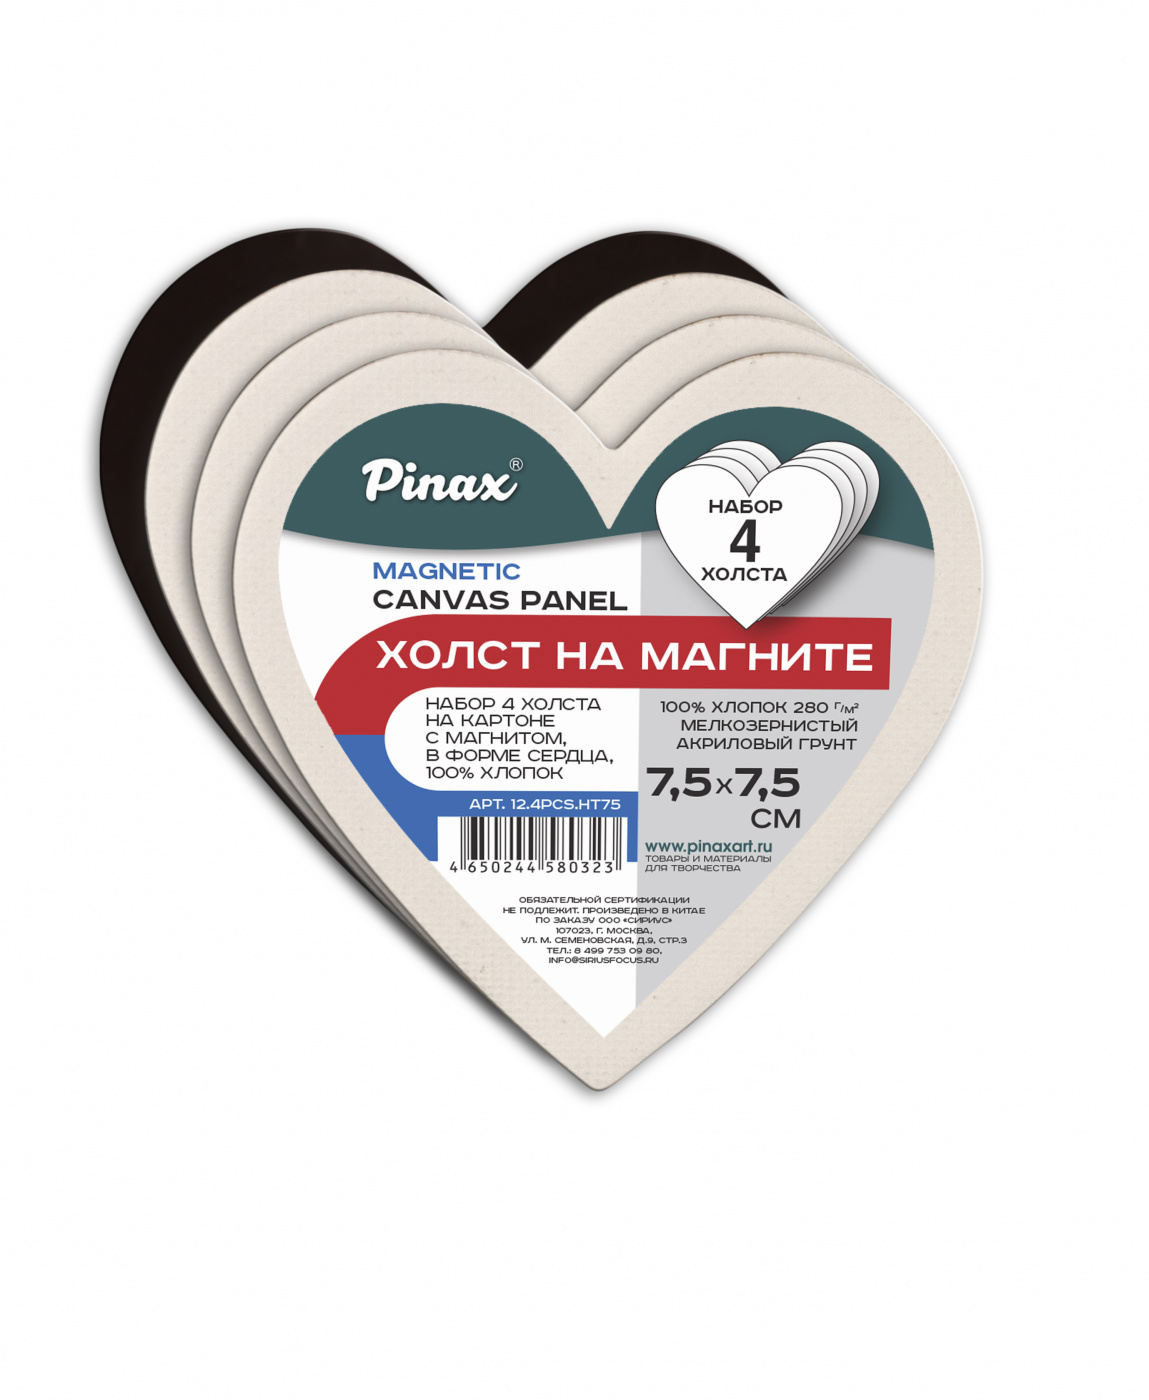 Набор холстов на картоне с магнитом Pinax 4 шт, хлопок 100%, в форме сердца 7,5 см пазлы на магните мои первые игры котик